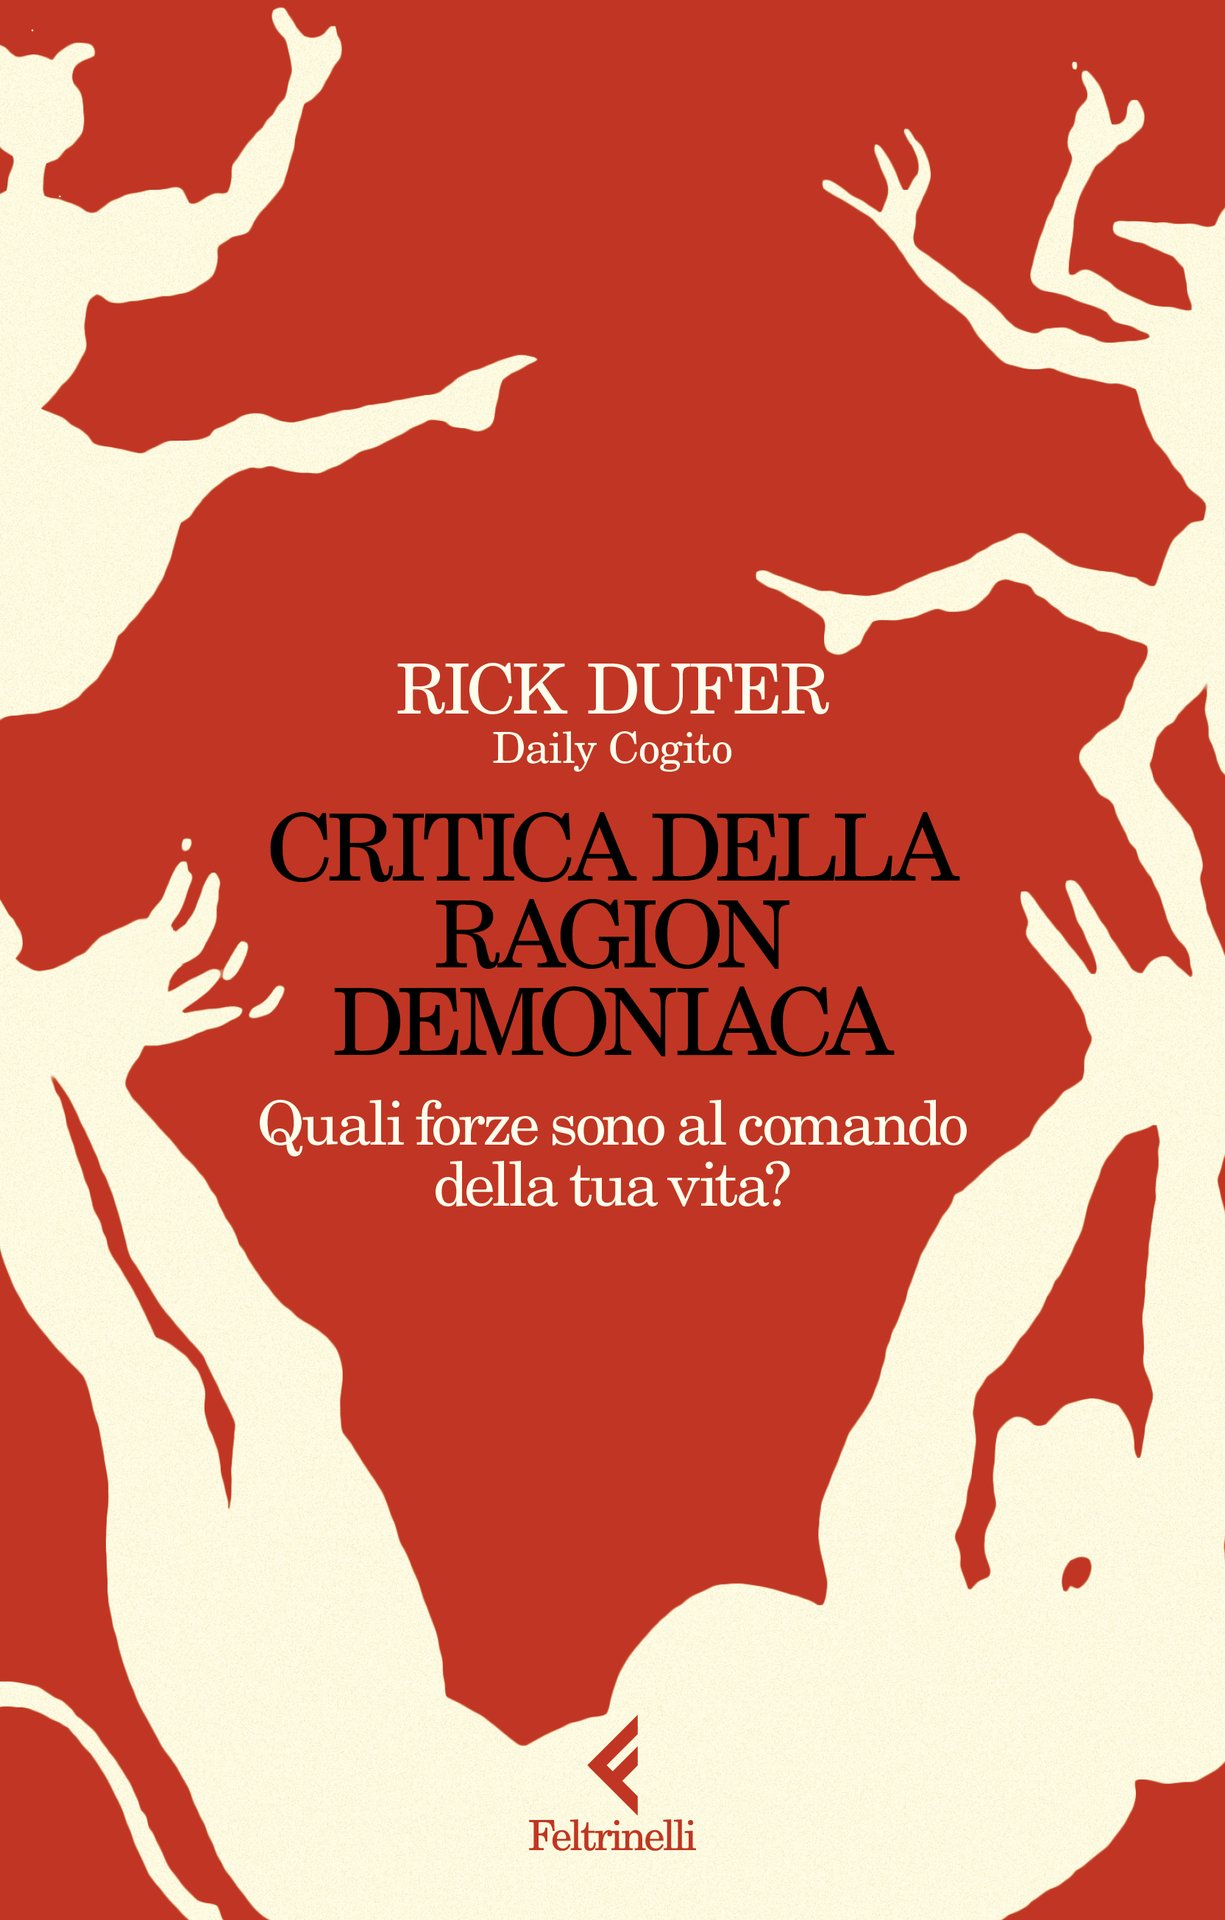 Rick DuFer presenta "Critica della ragion demoniaca" alla Feltrinelli Bologna